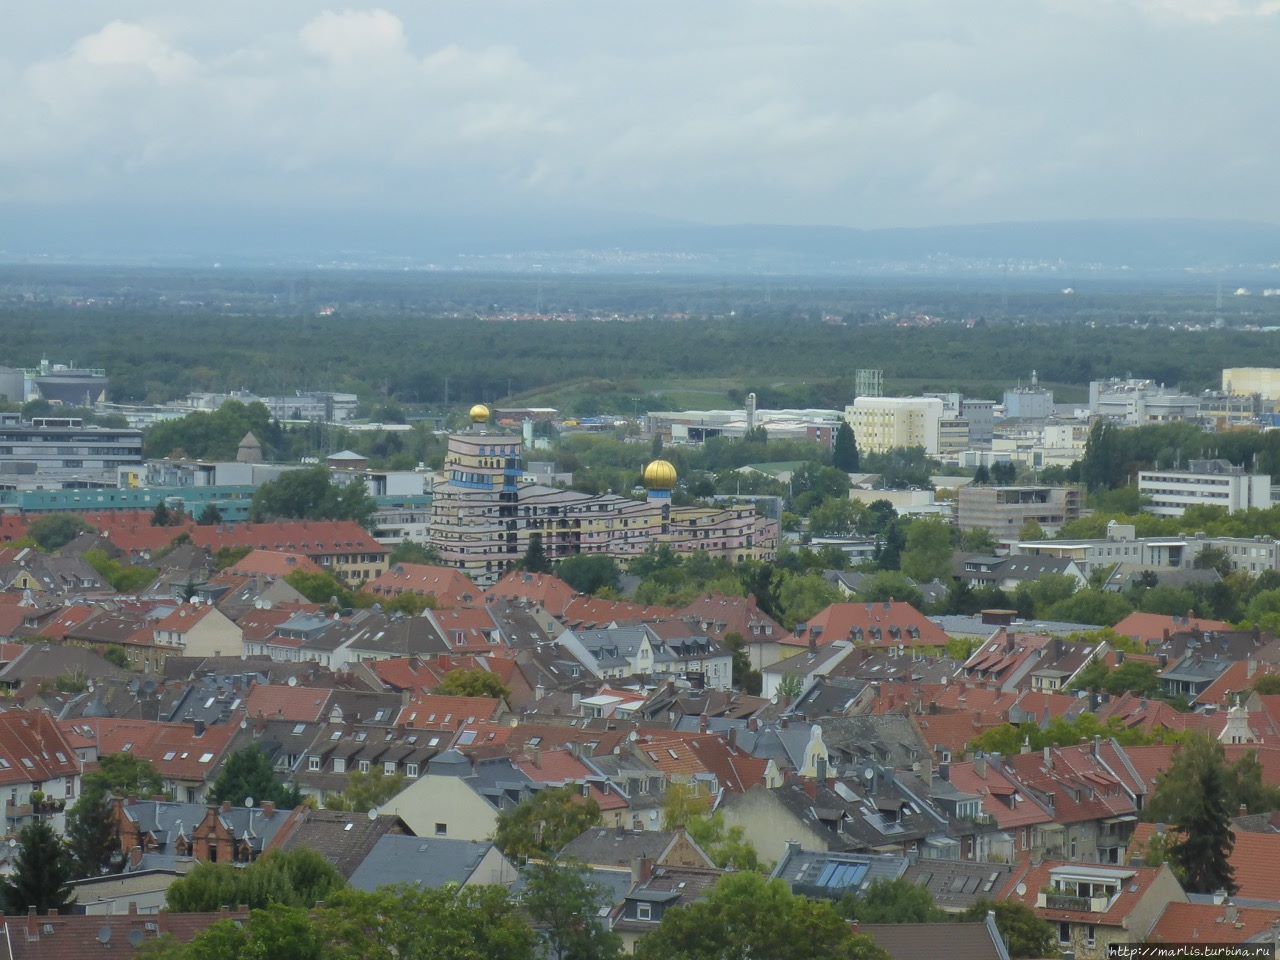 Вид с обзорной площадки Свадебной башни. фото из интернета Дармштадт, Германия